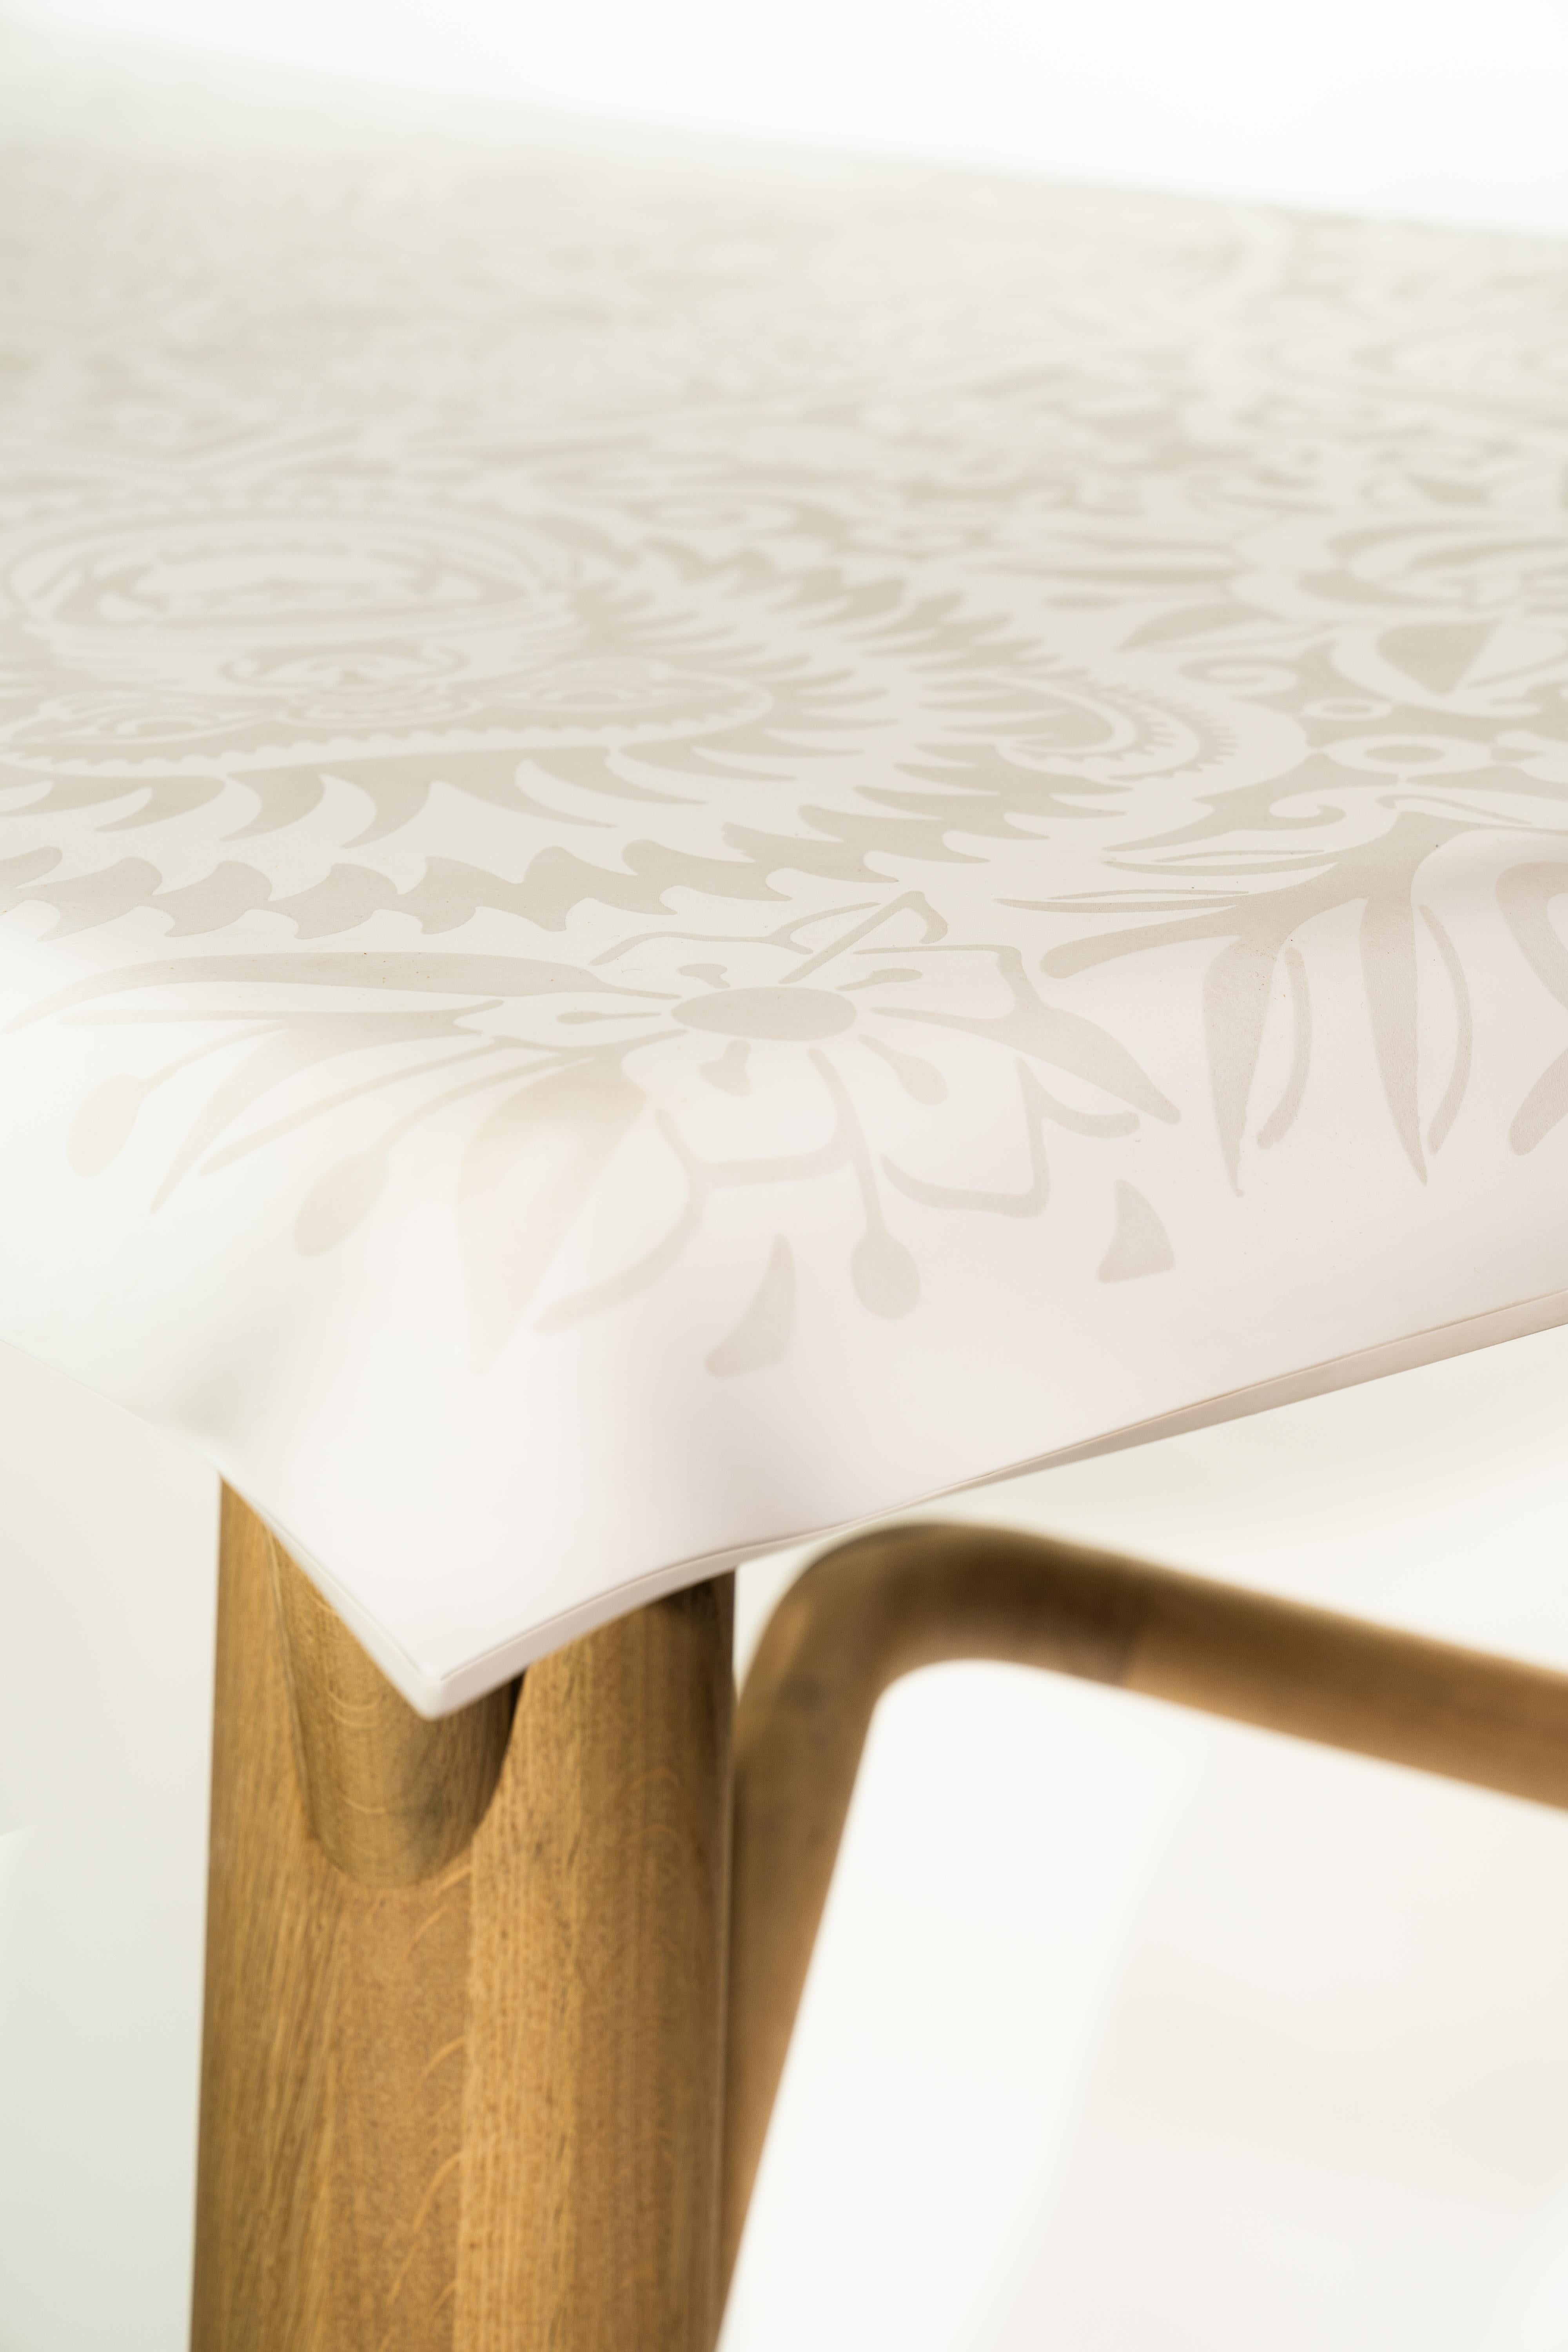 La table Café Solid est née d'une expérience matérielle : Le Studio a acquis beaucoup d'expérience avec la surface solide dans le cadre de divers projets d'intérieur et nous cherchions de nouvelles façons d'explorer davantage la polyvalence et